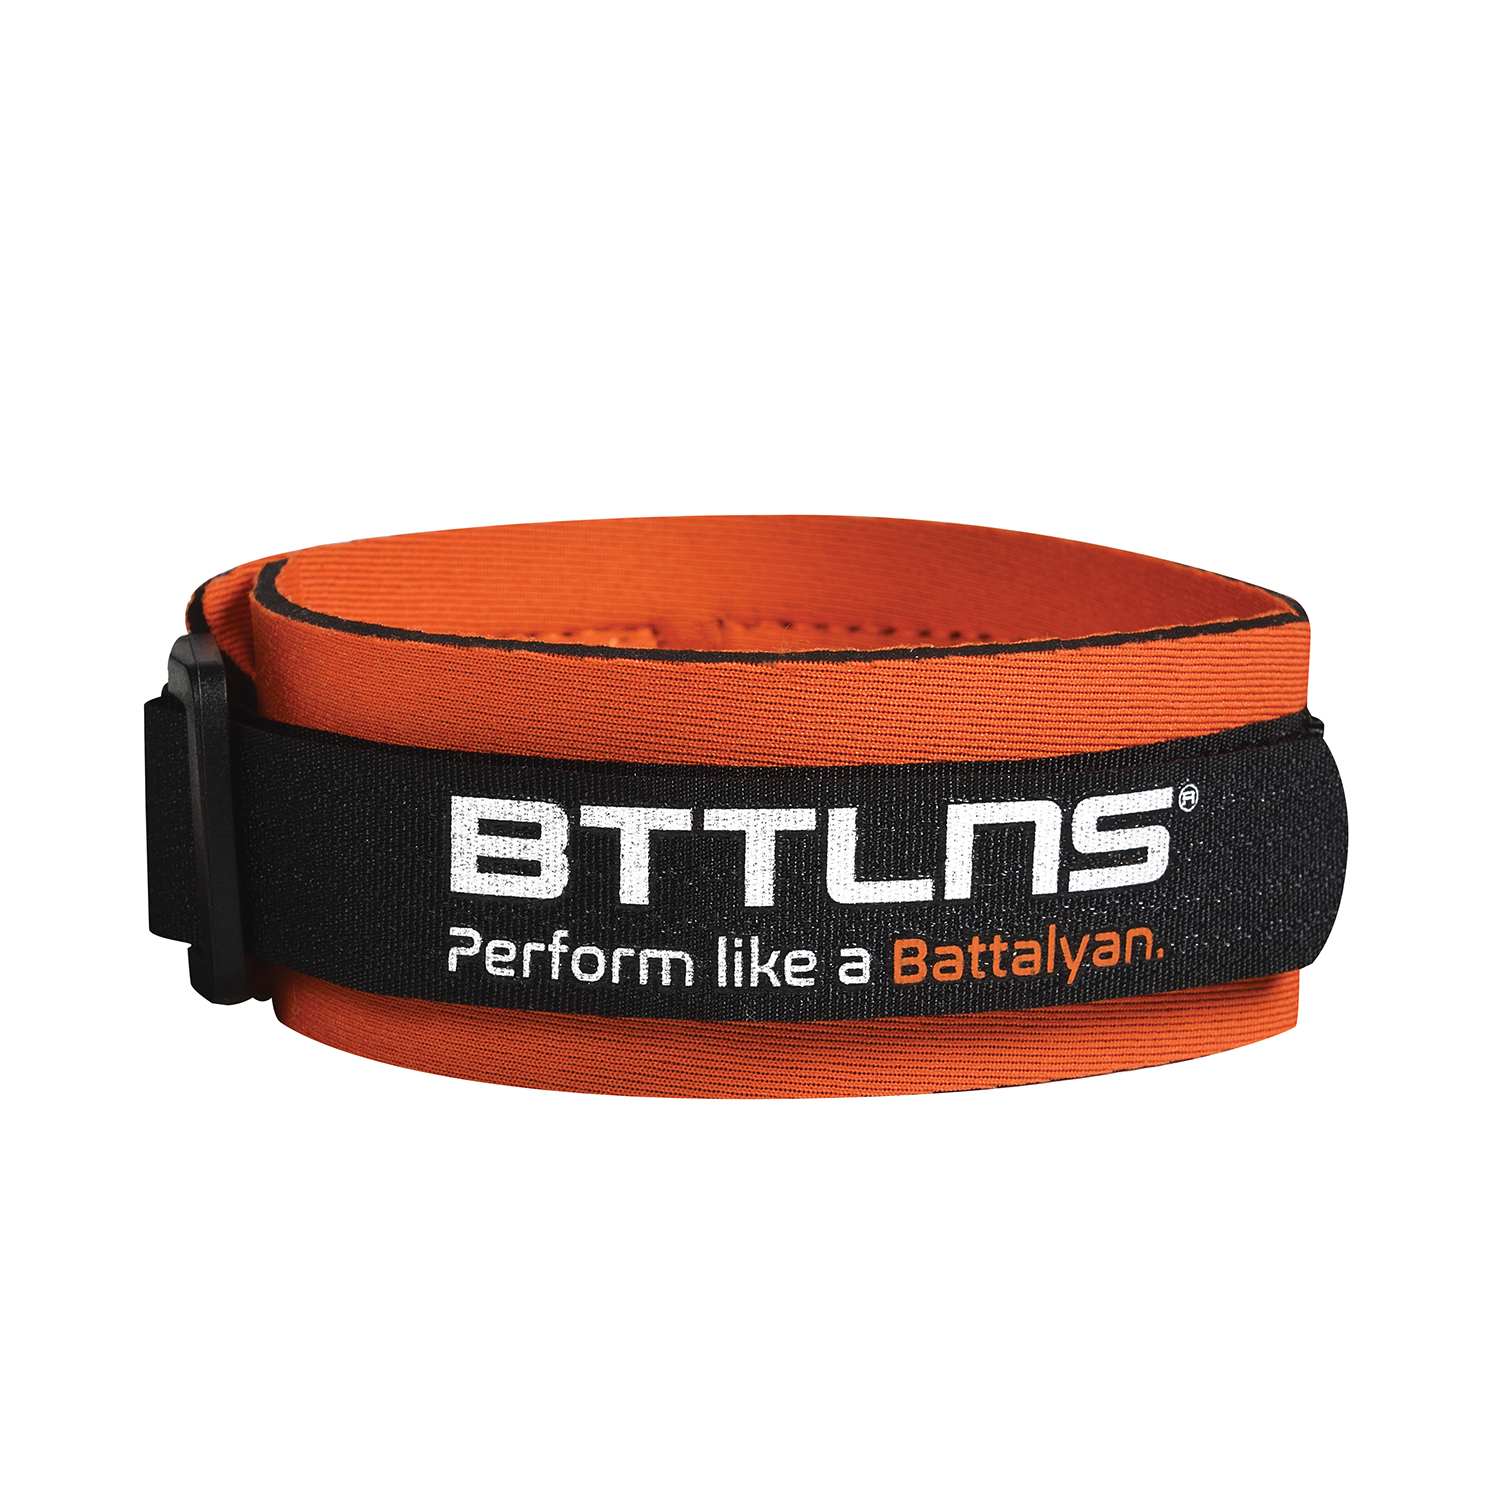 BTTLNS Timing chip strap Achilles 2.0 orange  0318002-034